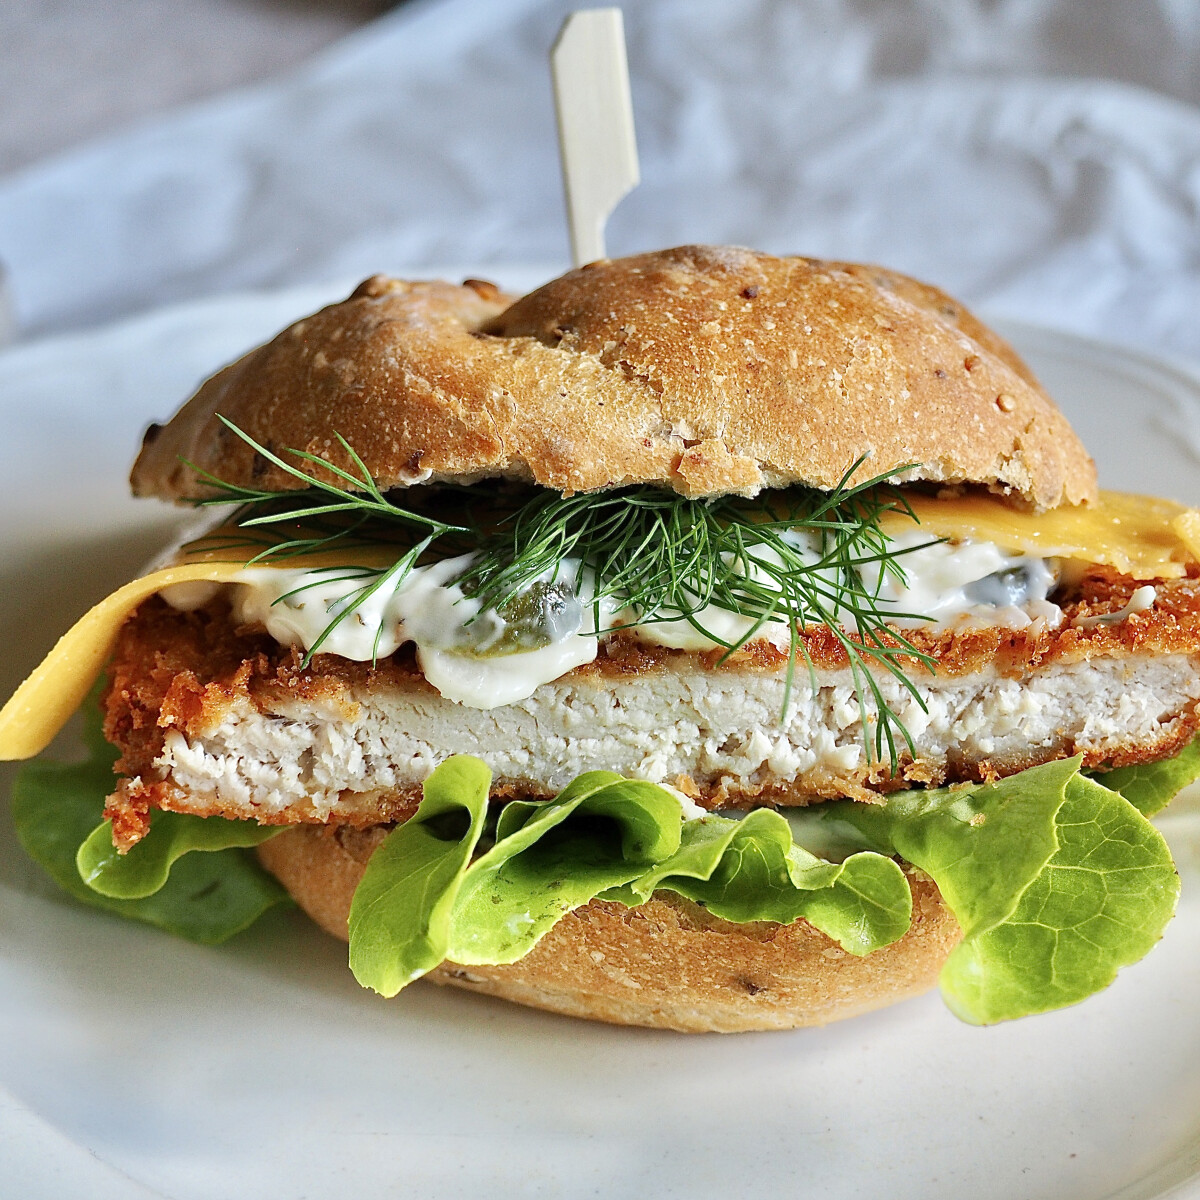 A régi-új rántott húsos szendvics, ami nosztalgikus büféhangulatot idéz